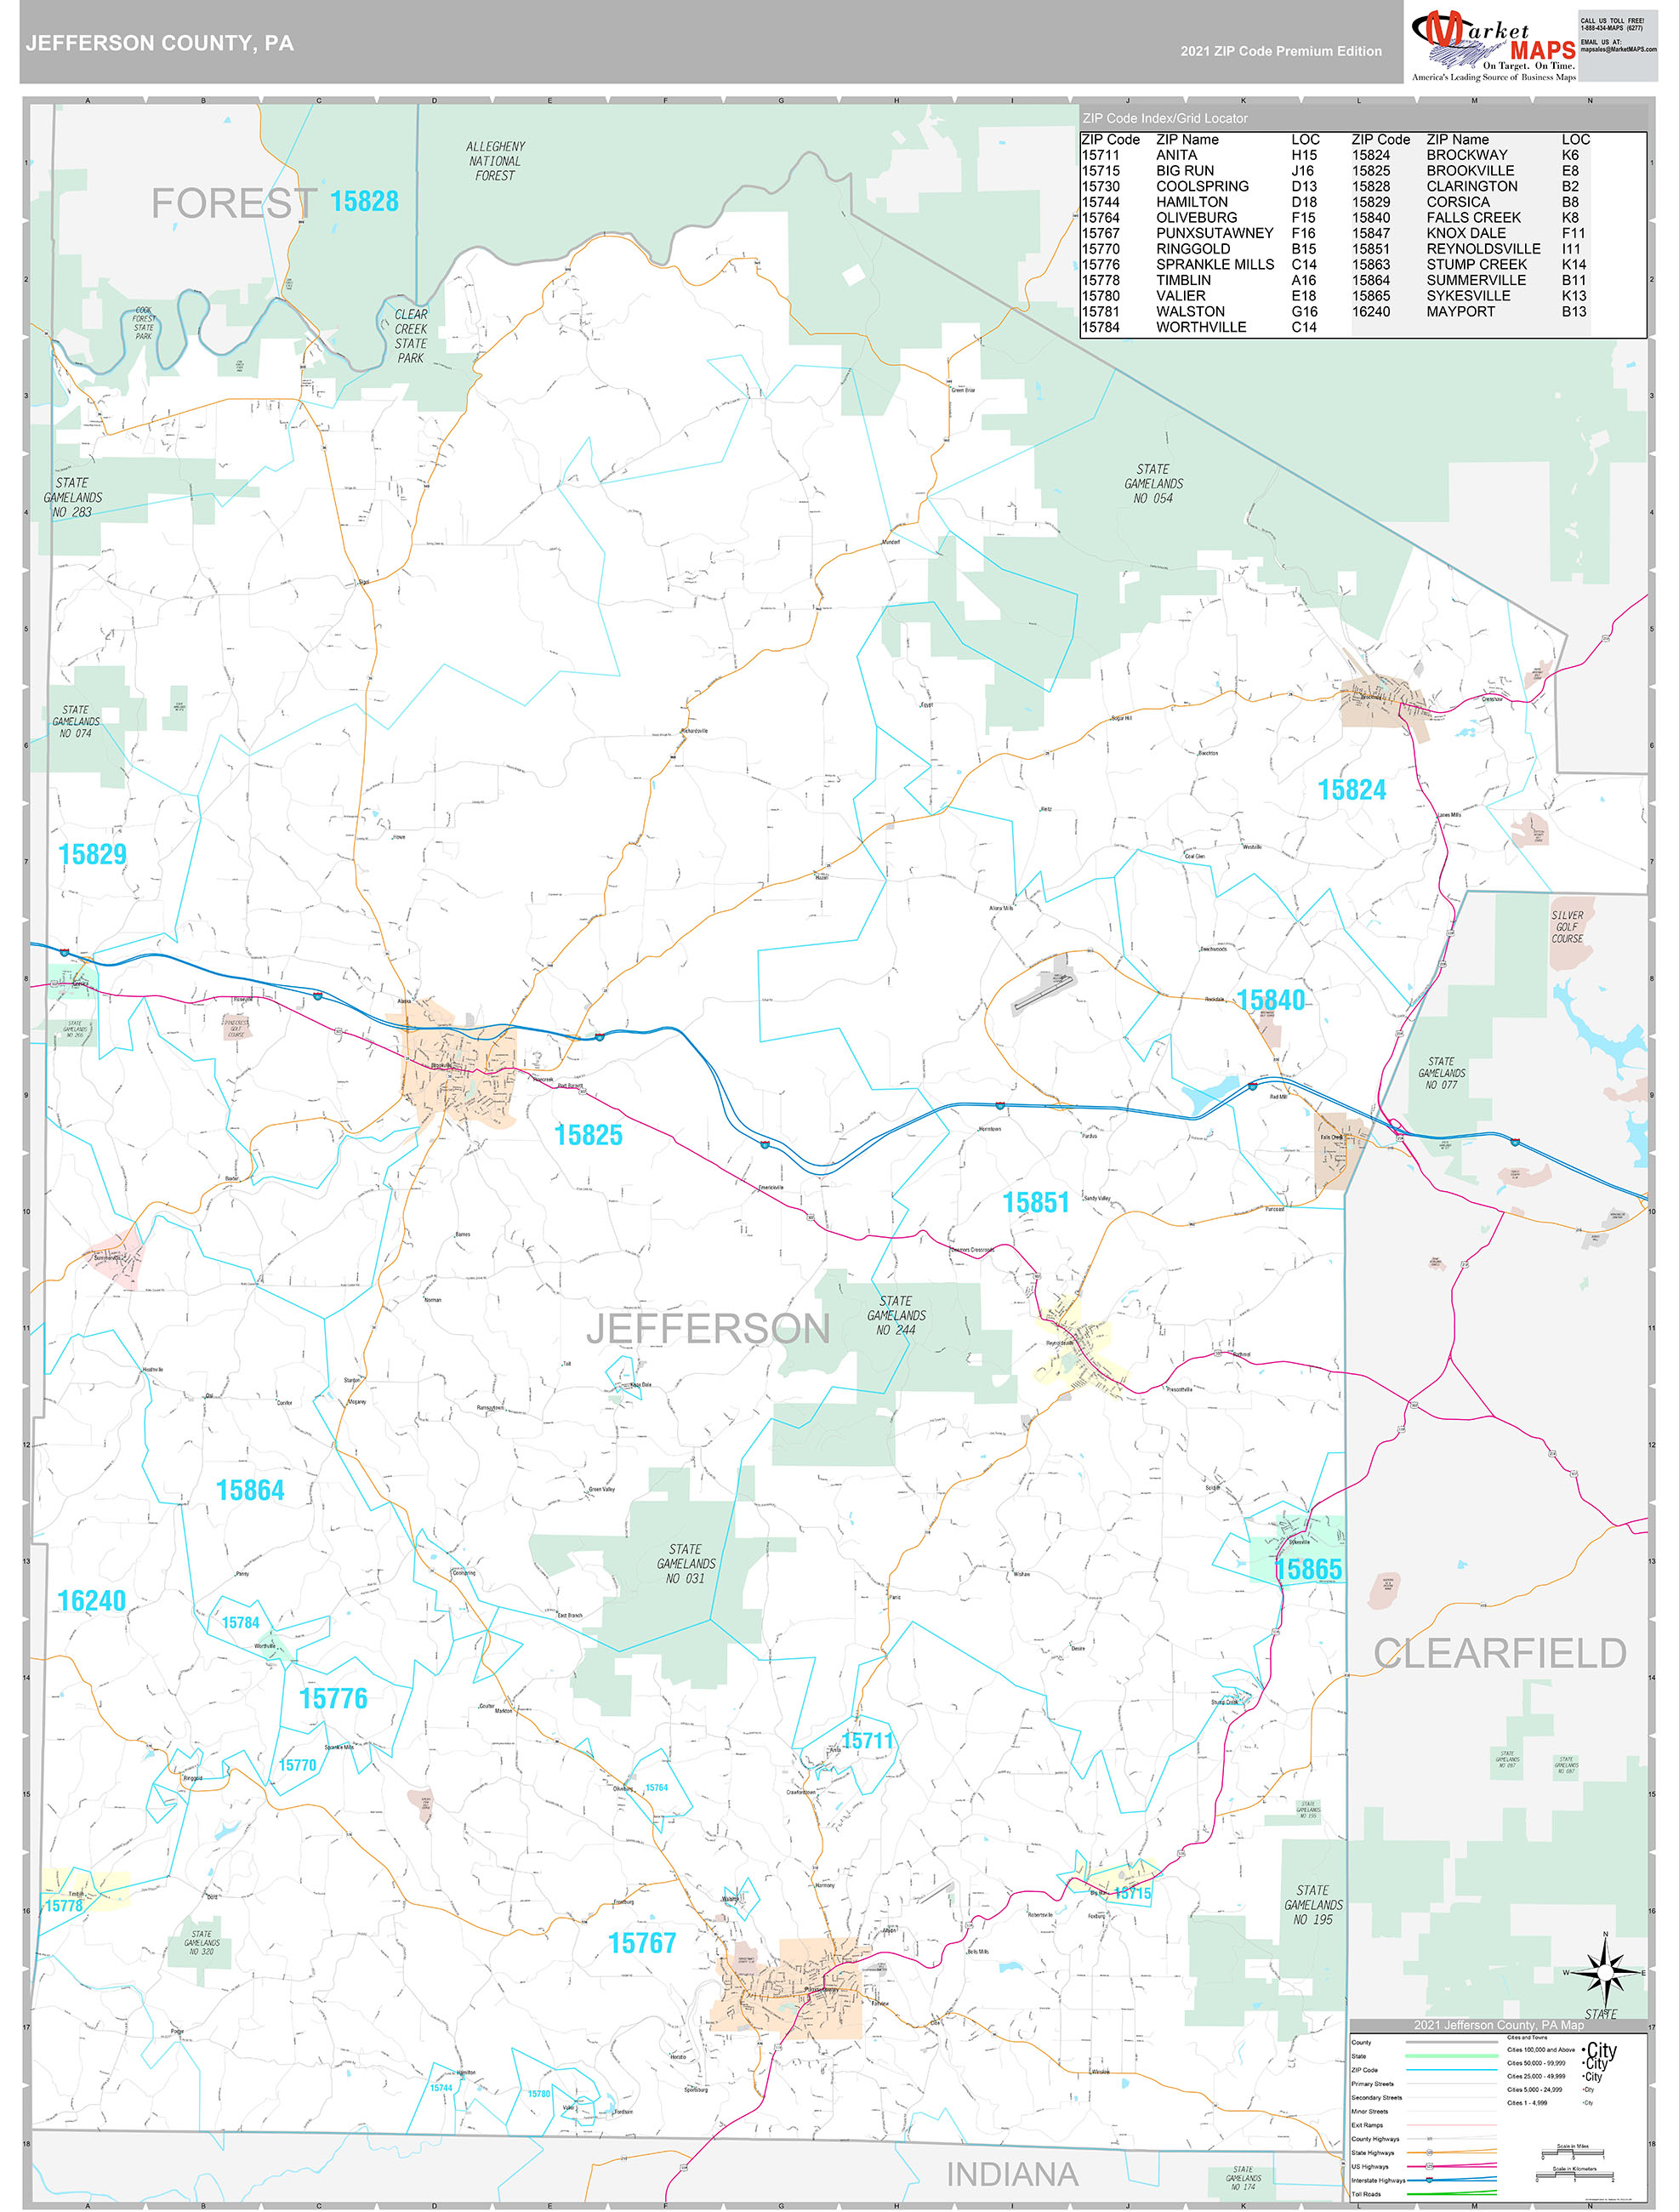 Jefferson County PA Wall Map Premium Style by MarketMAPS